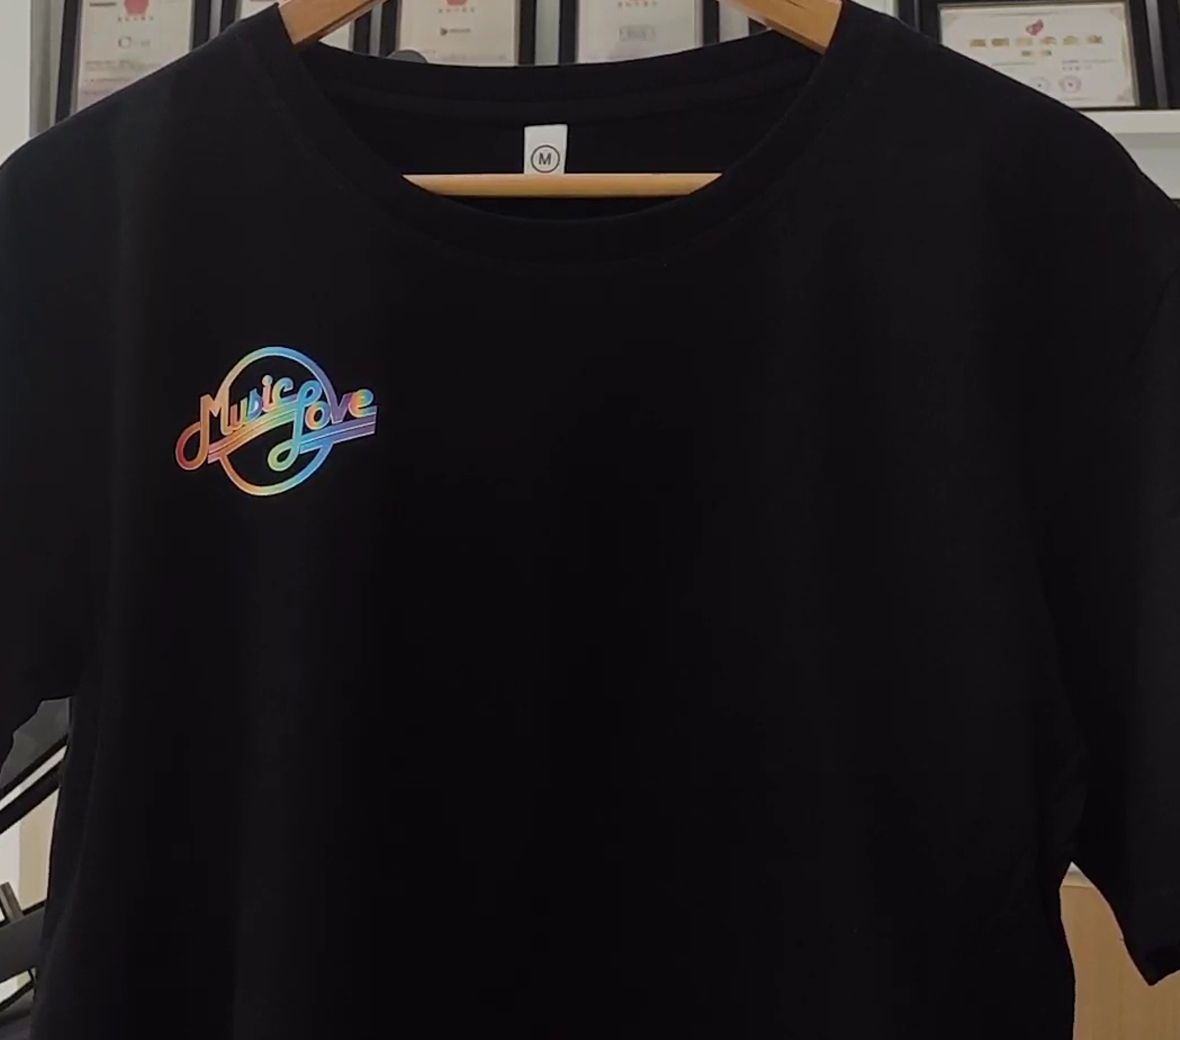 Направите бројеве и логотипе мајица, дресова, голф палица униформа са винилом за штампање ХТВ-300С